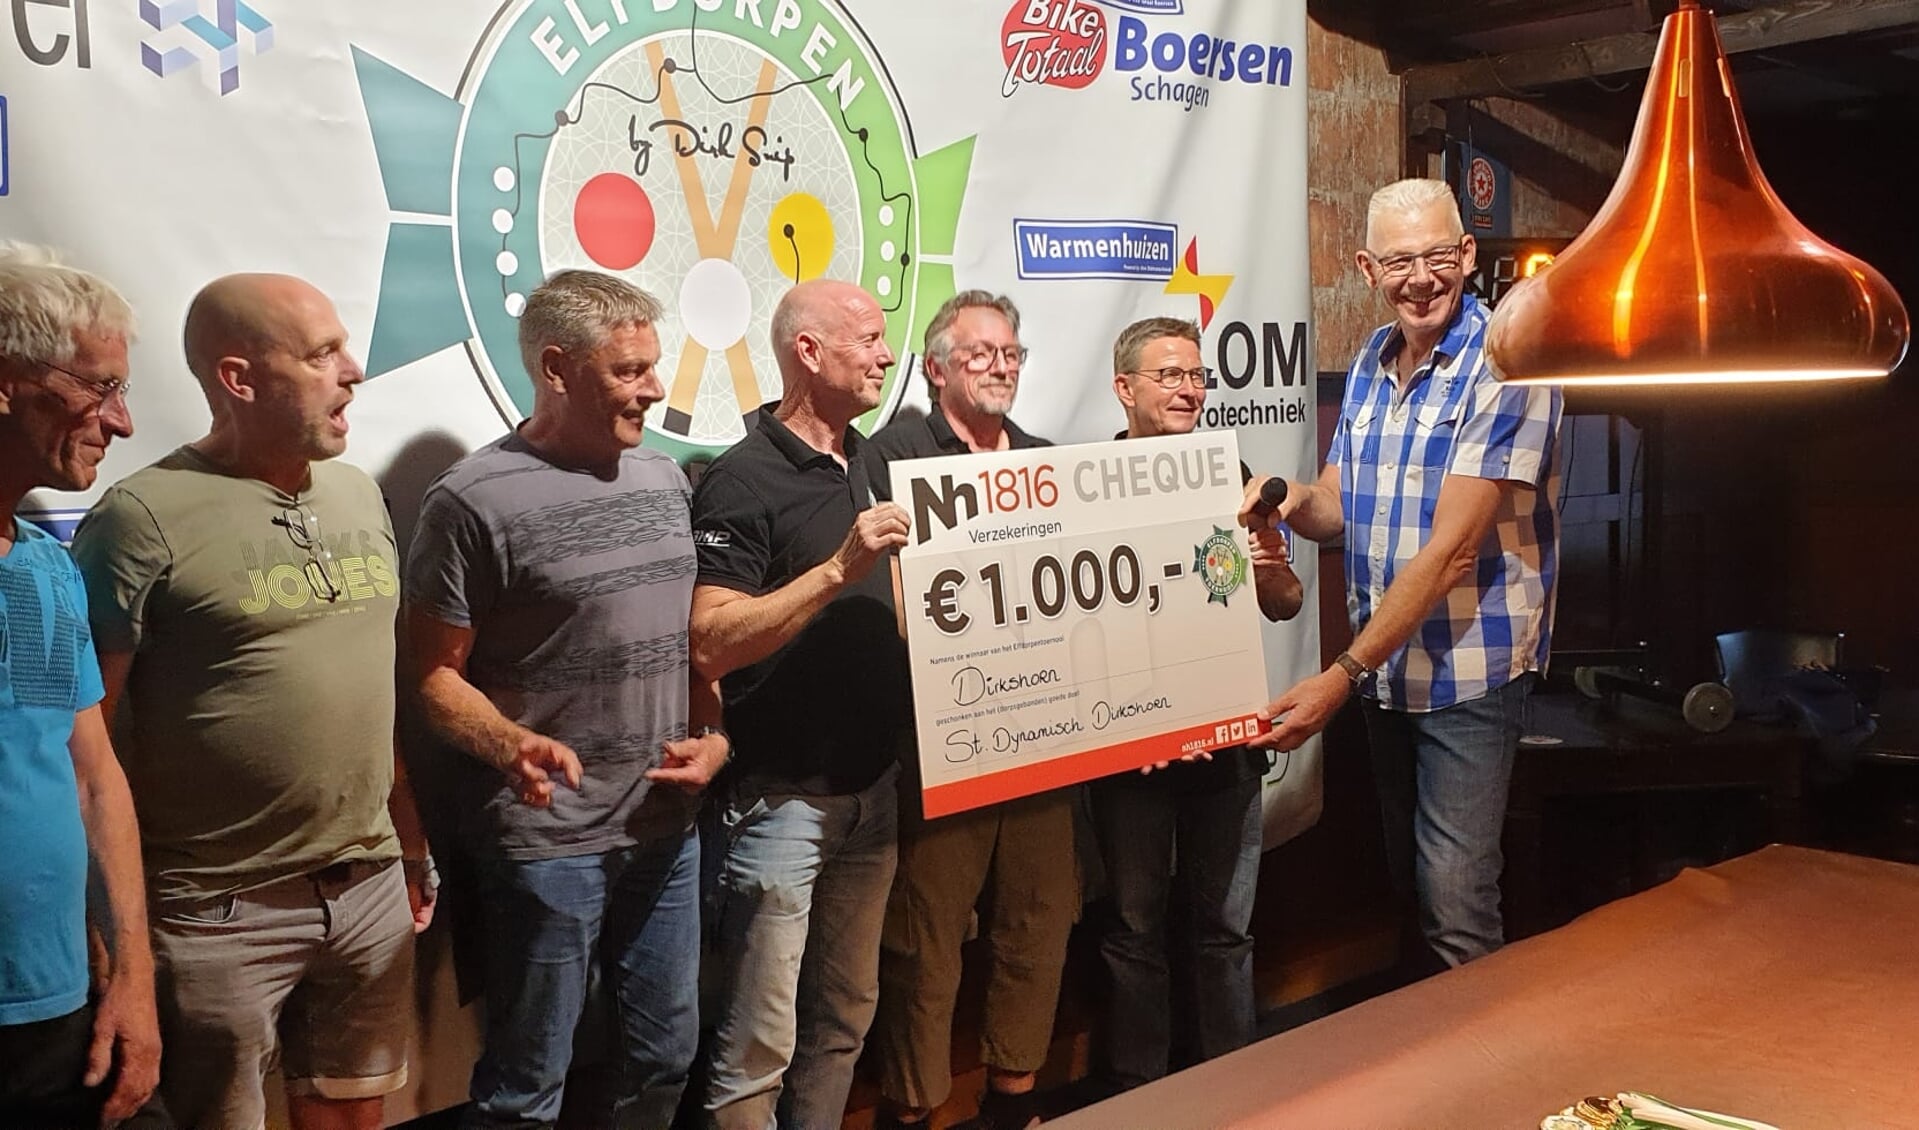 Het team van Dirkshorn werd winnaar van de tweede editie van het 11 Dorpentoernooi en ontving een cheque van duizend euro. Rechts organisator Dirk Snip.